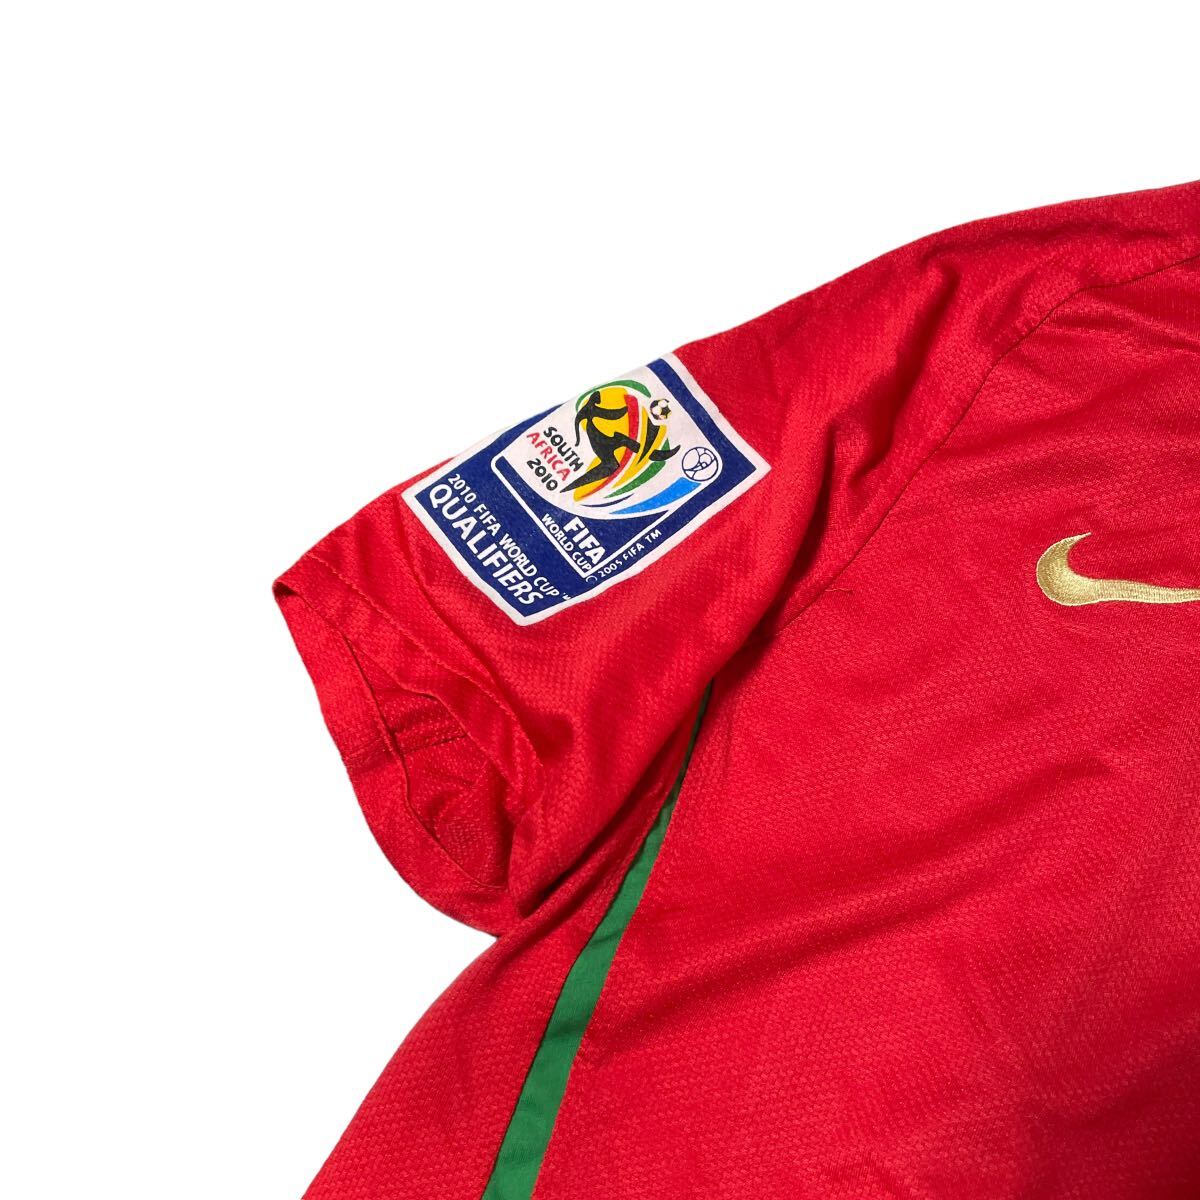 NIKE ナイキ ポルトガル代表 ロナウド 2010 FIFA公式 W杯 ワールドカップ ユニフォーム 赤レッド M_画像4